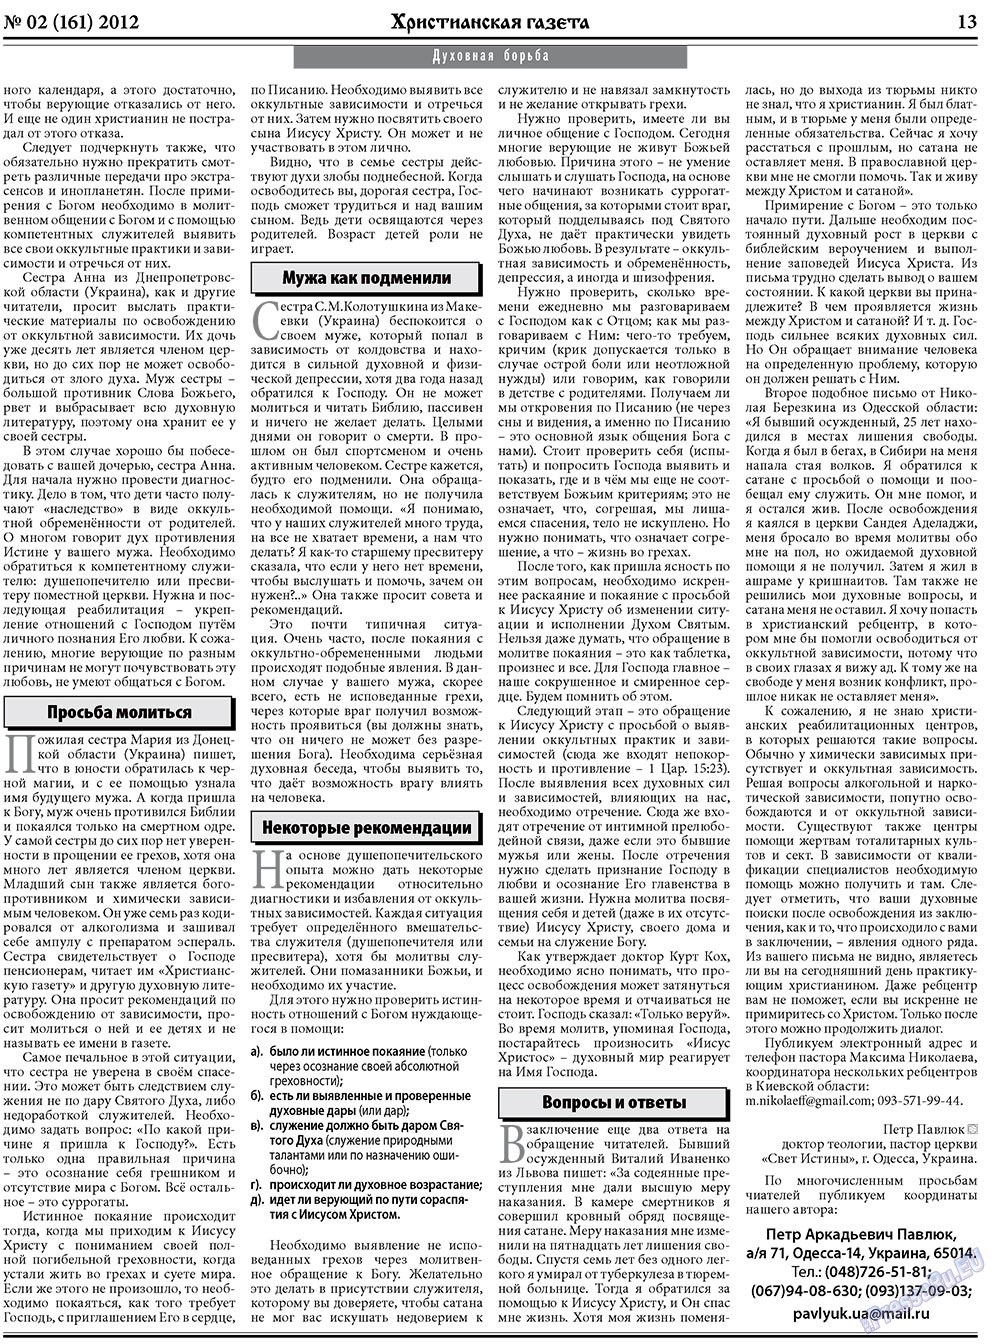 Христианская газета, газета. 2012 №2 стр.21